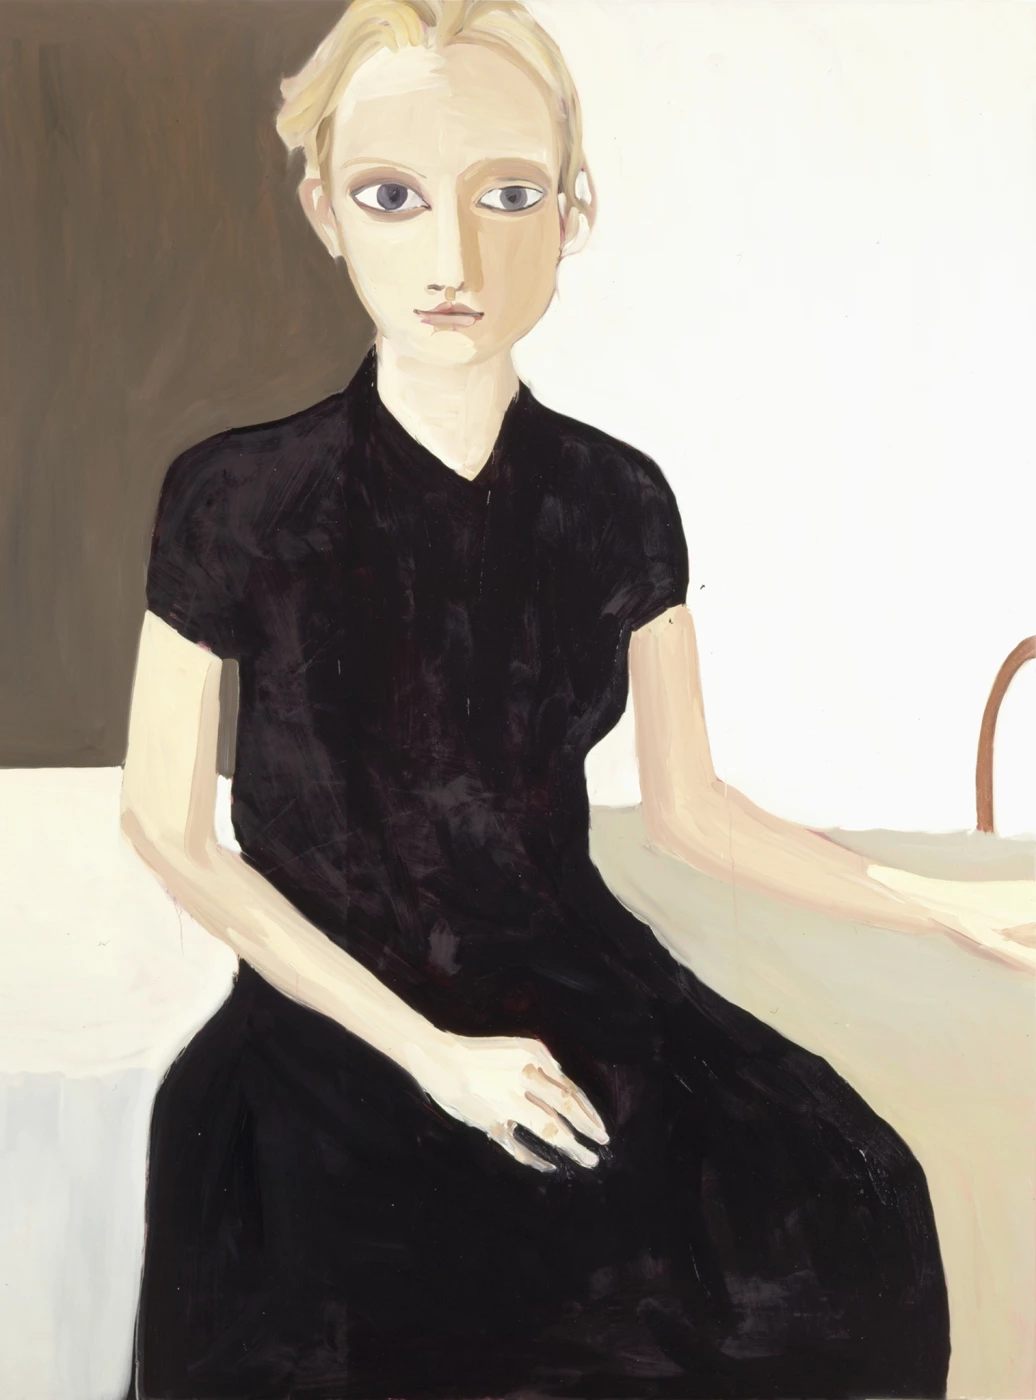 Blond girl - Black Dress, 2005. Шанталь Джофф (иногда Шанталь Жоффе, англ. Chantal Joffe) - британская художница. Современная живопись. Contemporary art, paintings